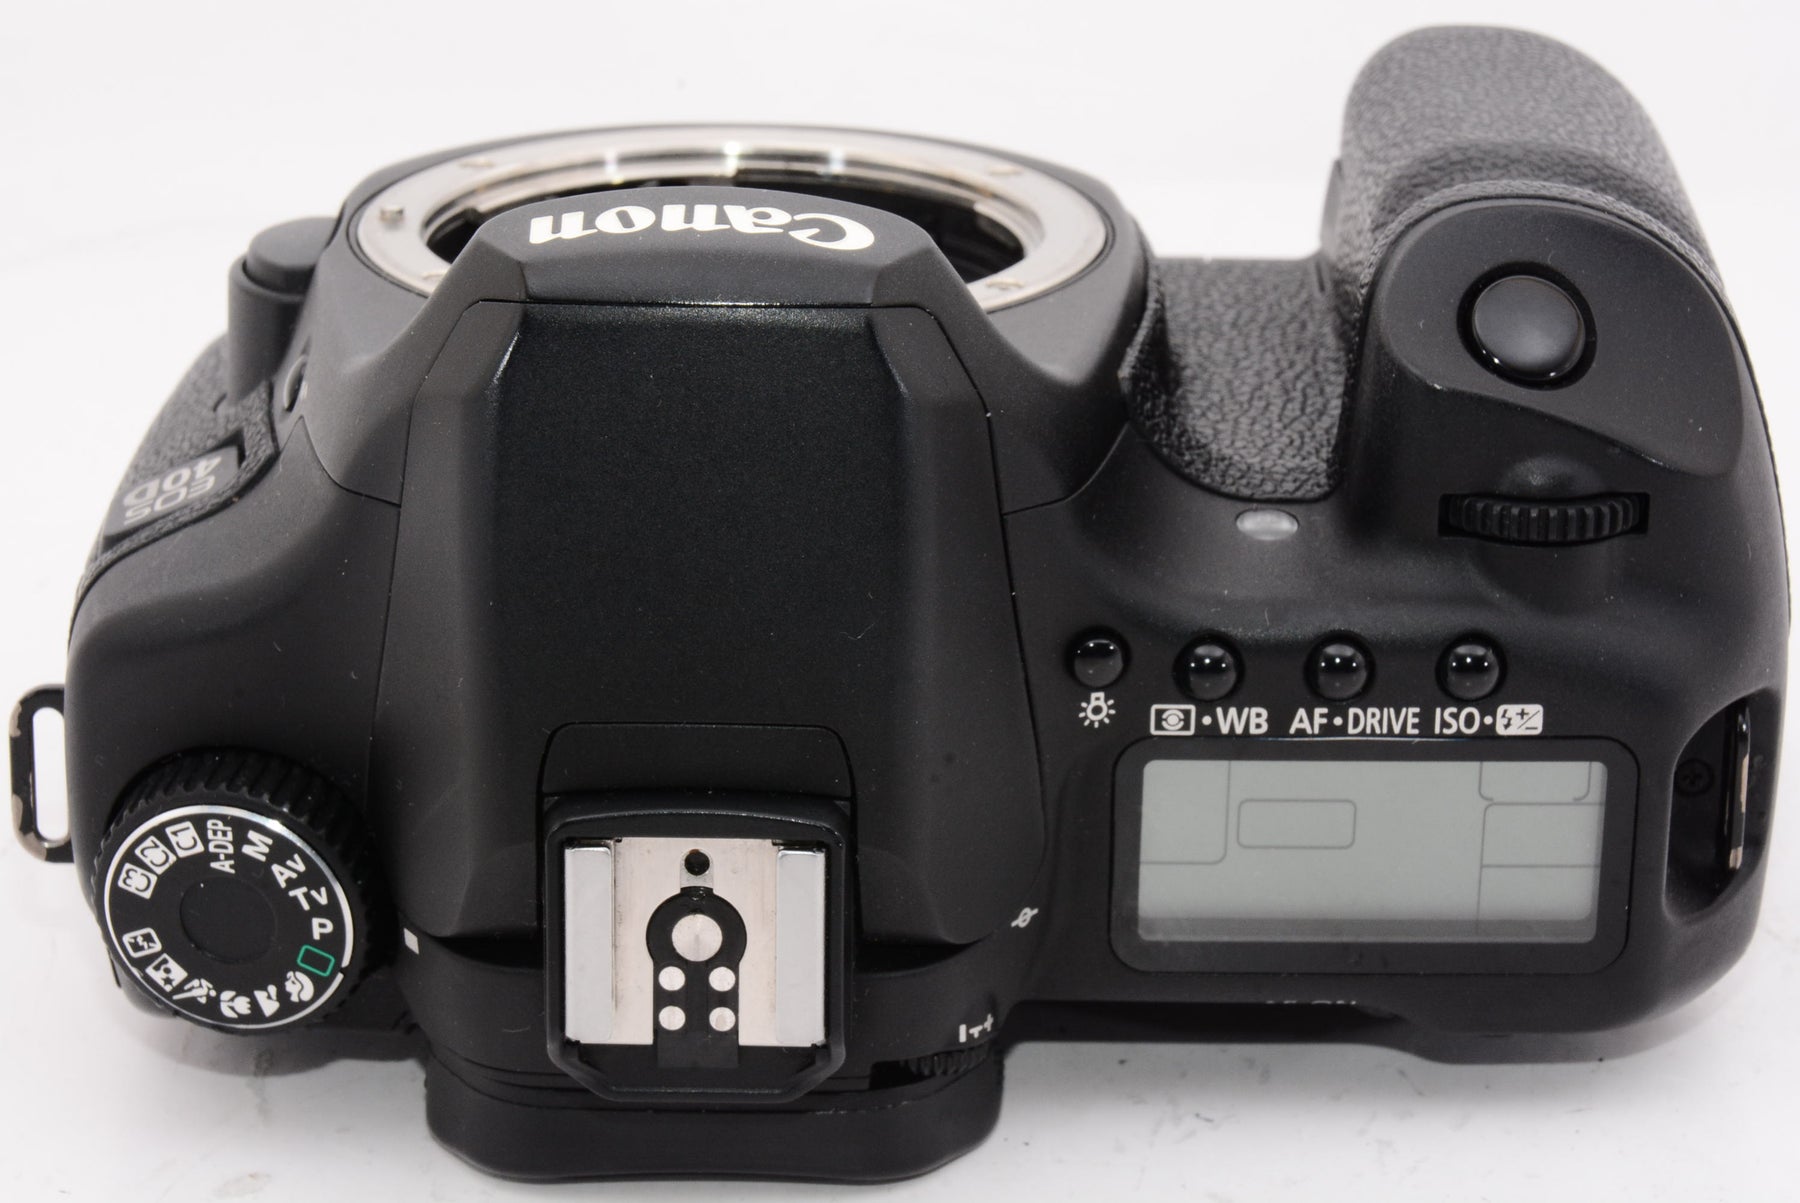 オススメ】Canon デジタル一眼レフカメラ EOS 40D ボディ EOS40D